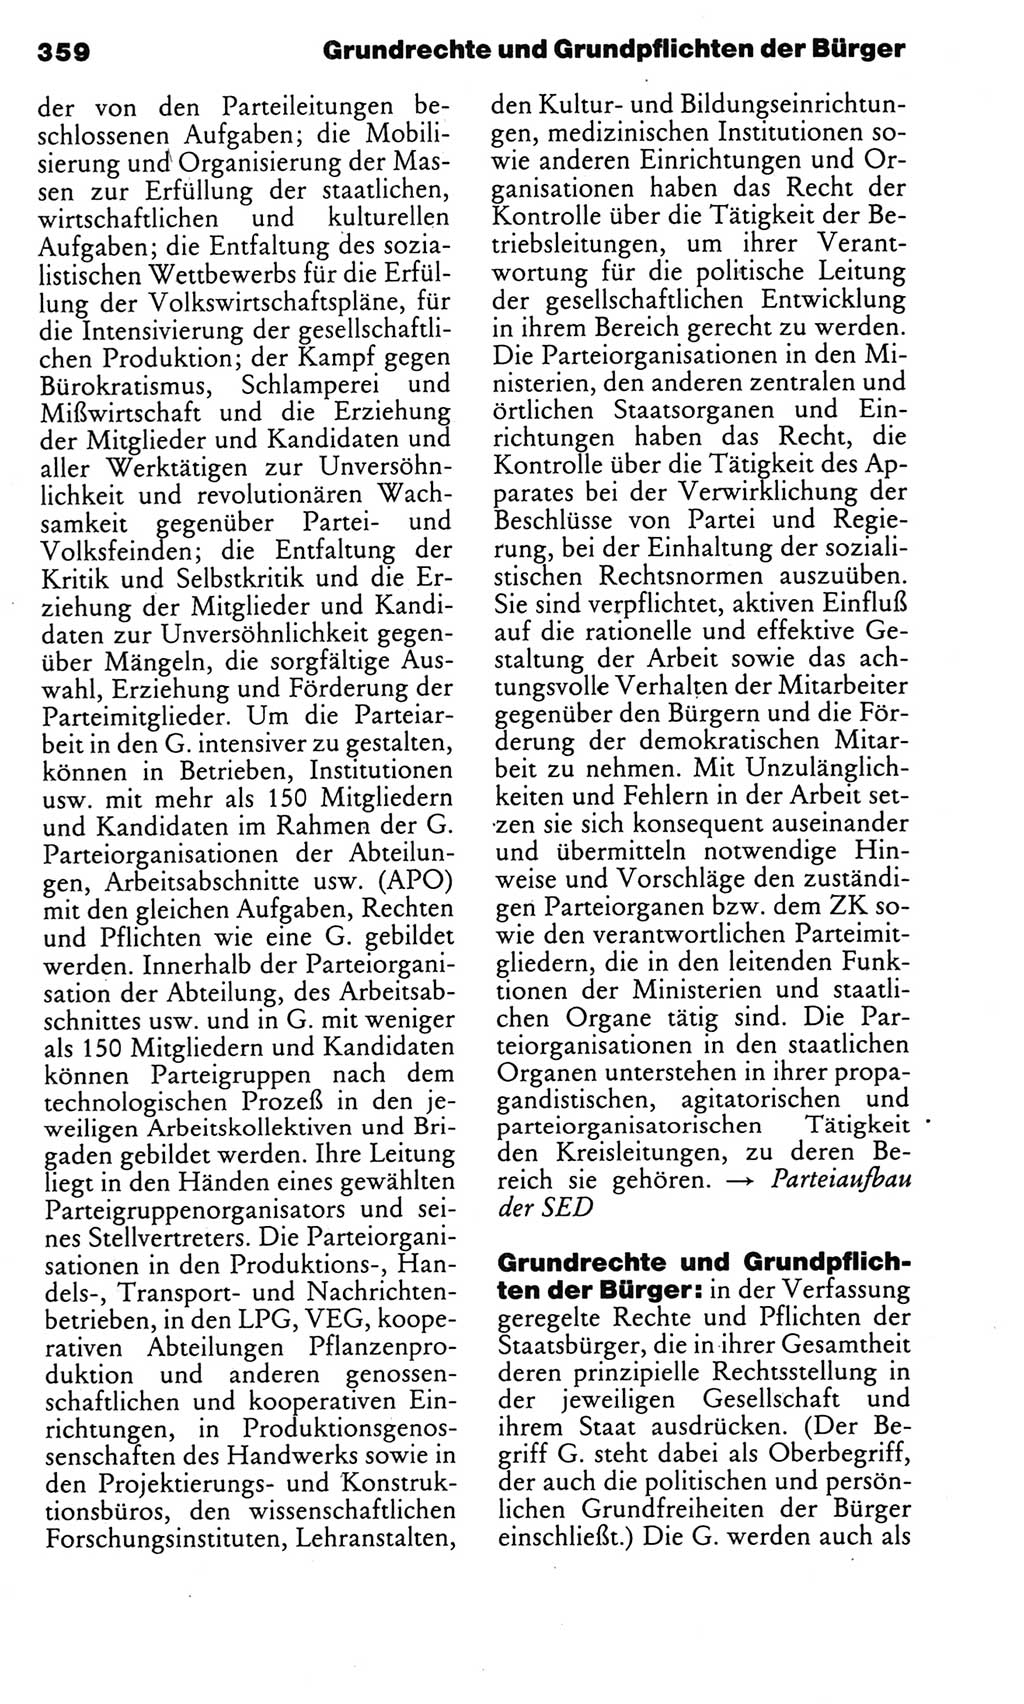 Kleines politisches Wörterbuch [Deutsche Demokratische Republik (DDR)] 1985, Seite 359 (Kl. pol. Wb. DDR 1985, S. 359)